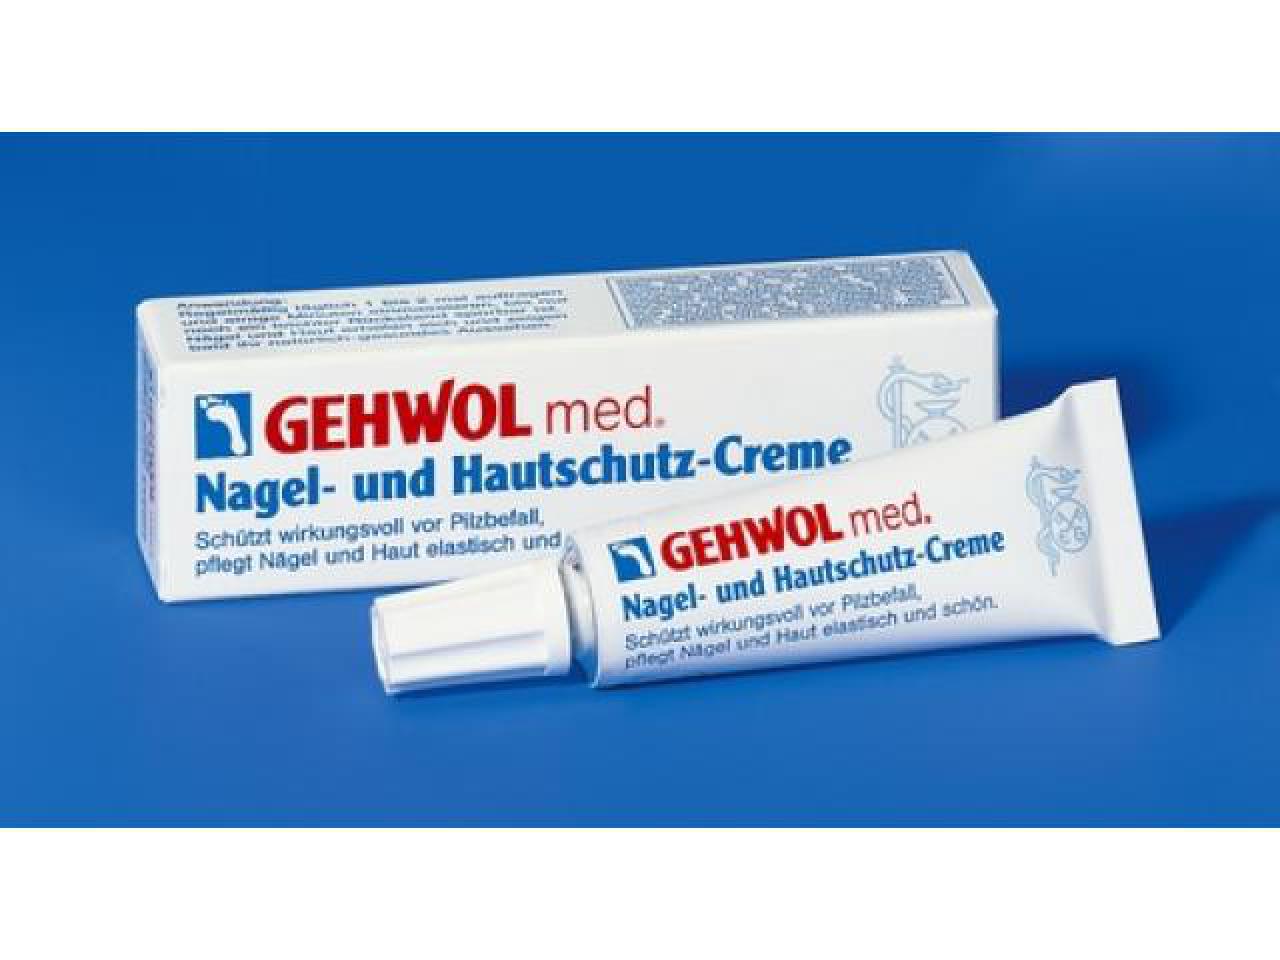 GEHWOL med Nagel- und Hautschutz-Creme 15 ml